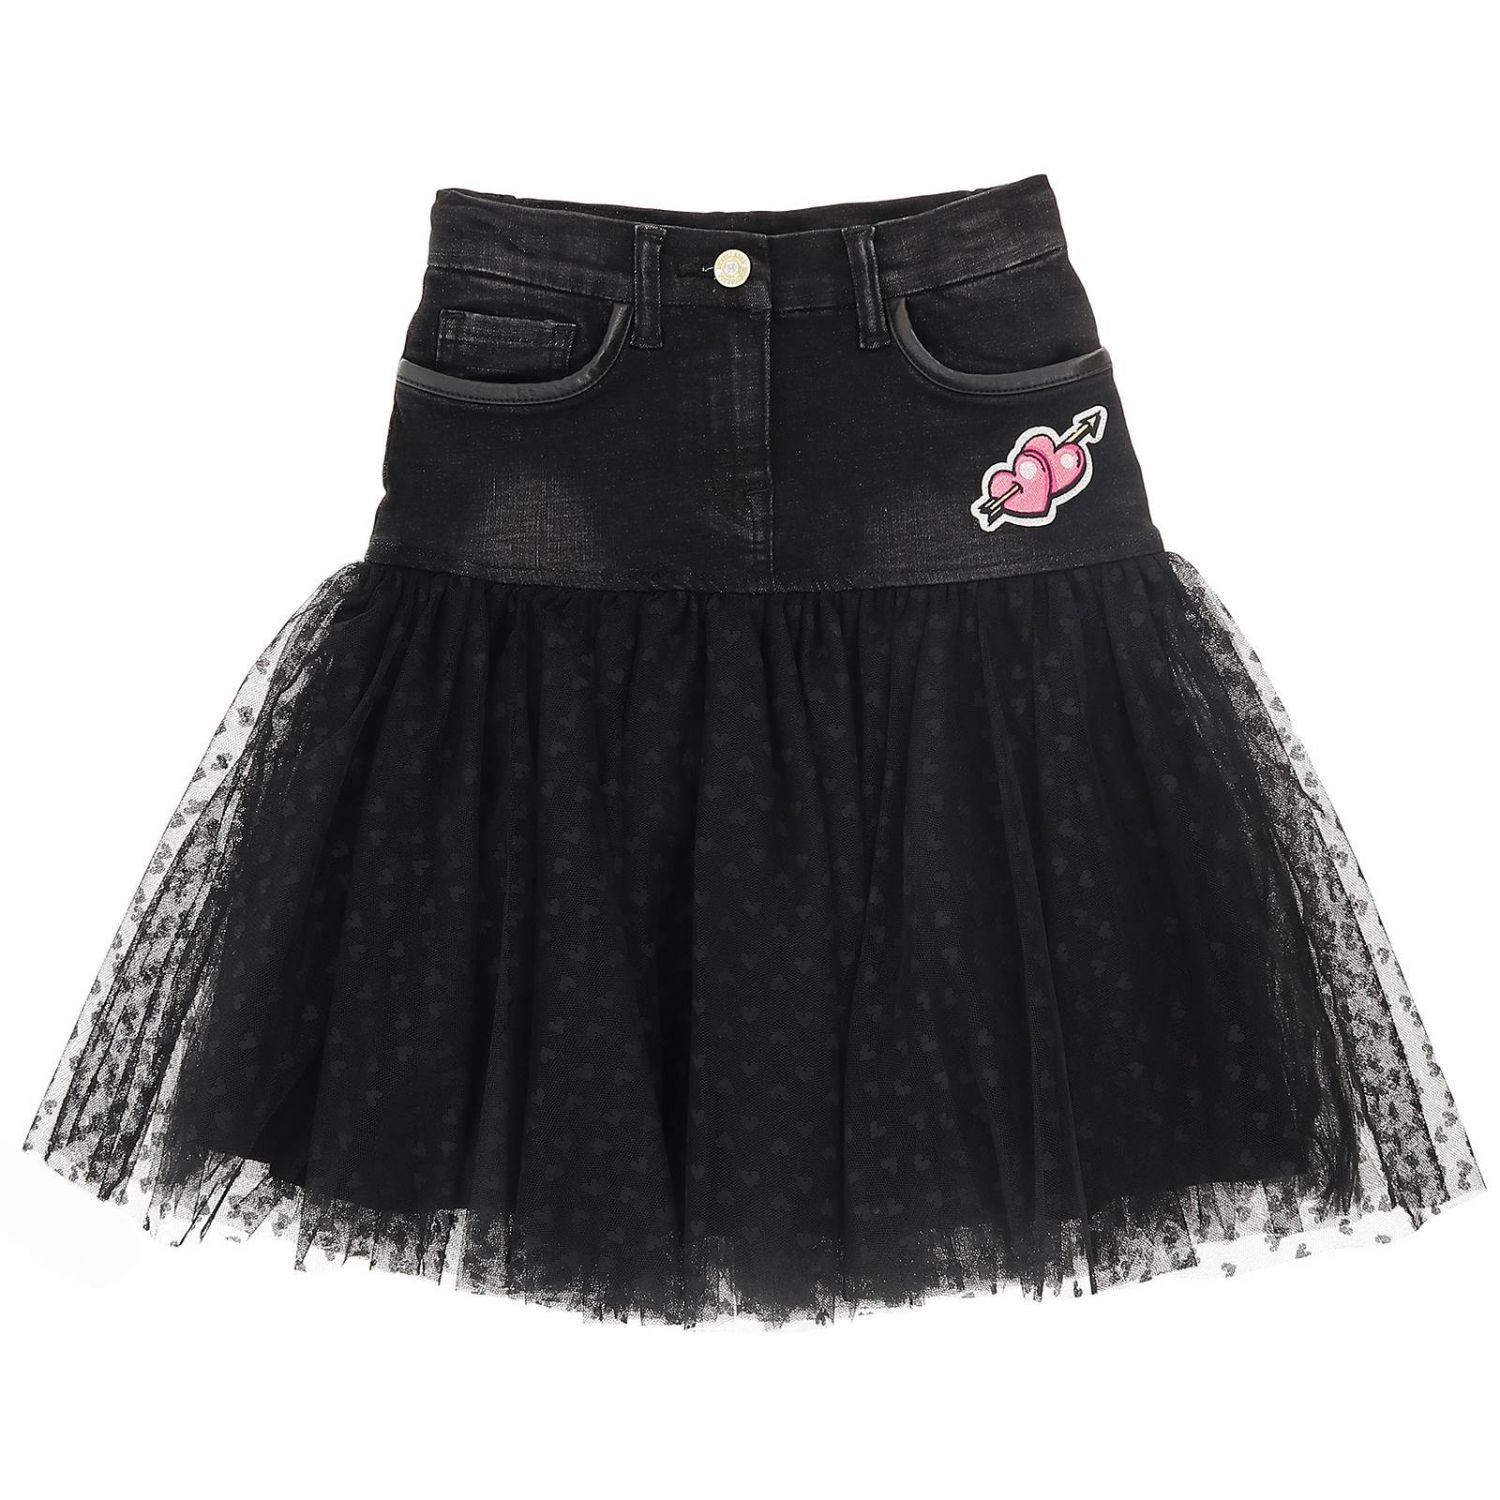 Monnalisa Outlet: skirt for girls - Black | Monnalisa skirt 194701AC ...